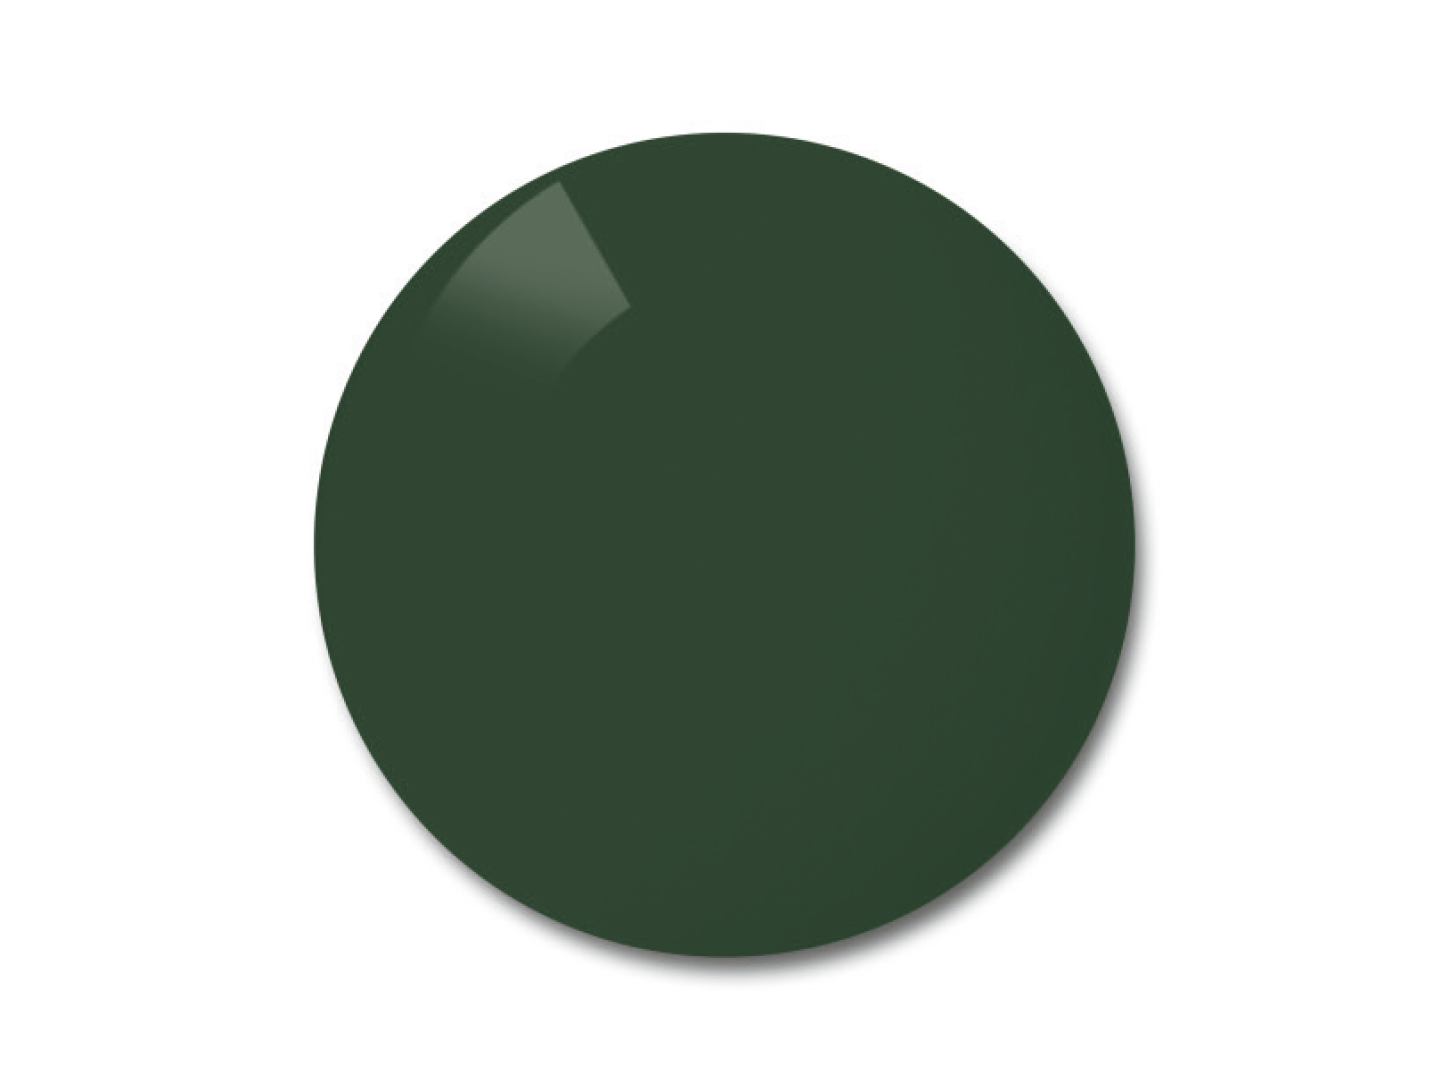 Príklad farby zelených polarizovaných šošoviek.